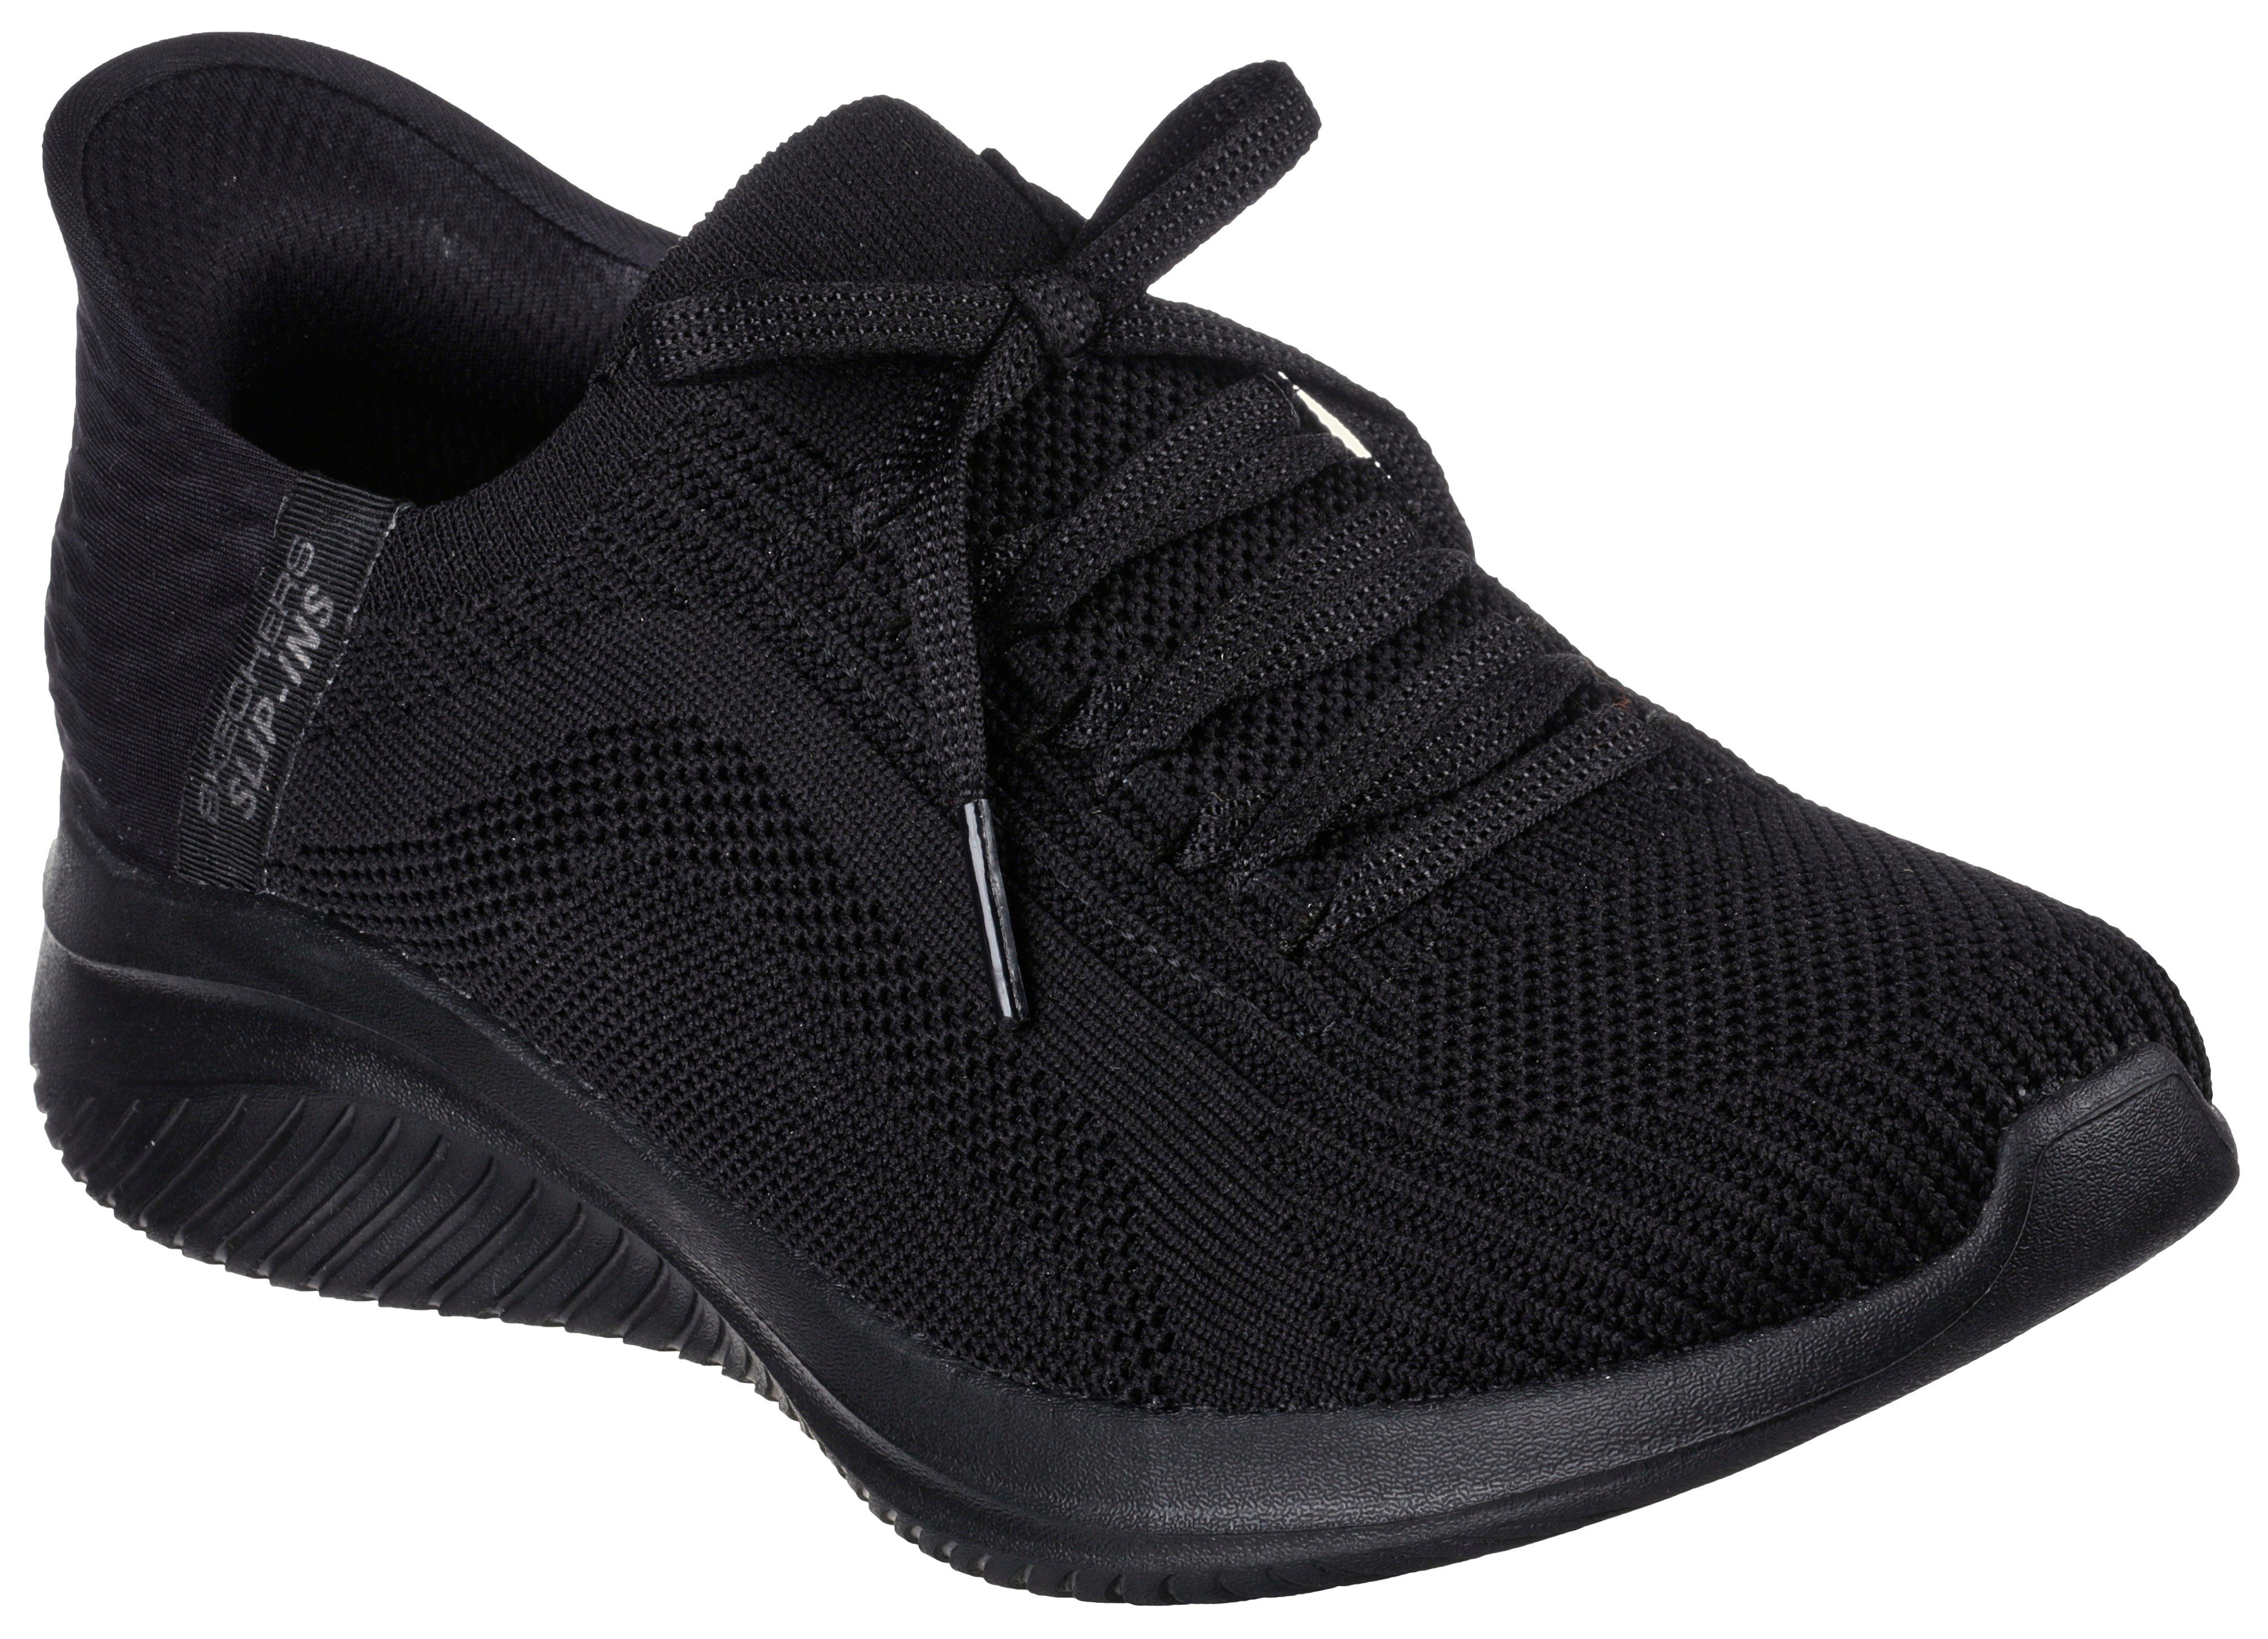 Skechers ULTRA FLEX schwarz Sneaker Slip-On Slip mit Einschlupf 3.0 für leichten Ins-Funktion